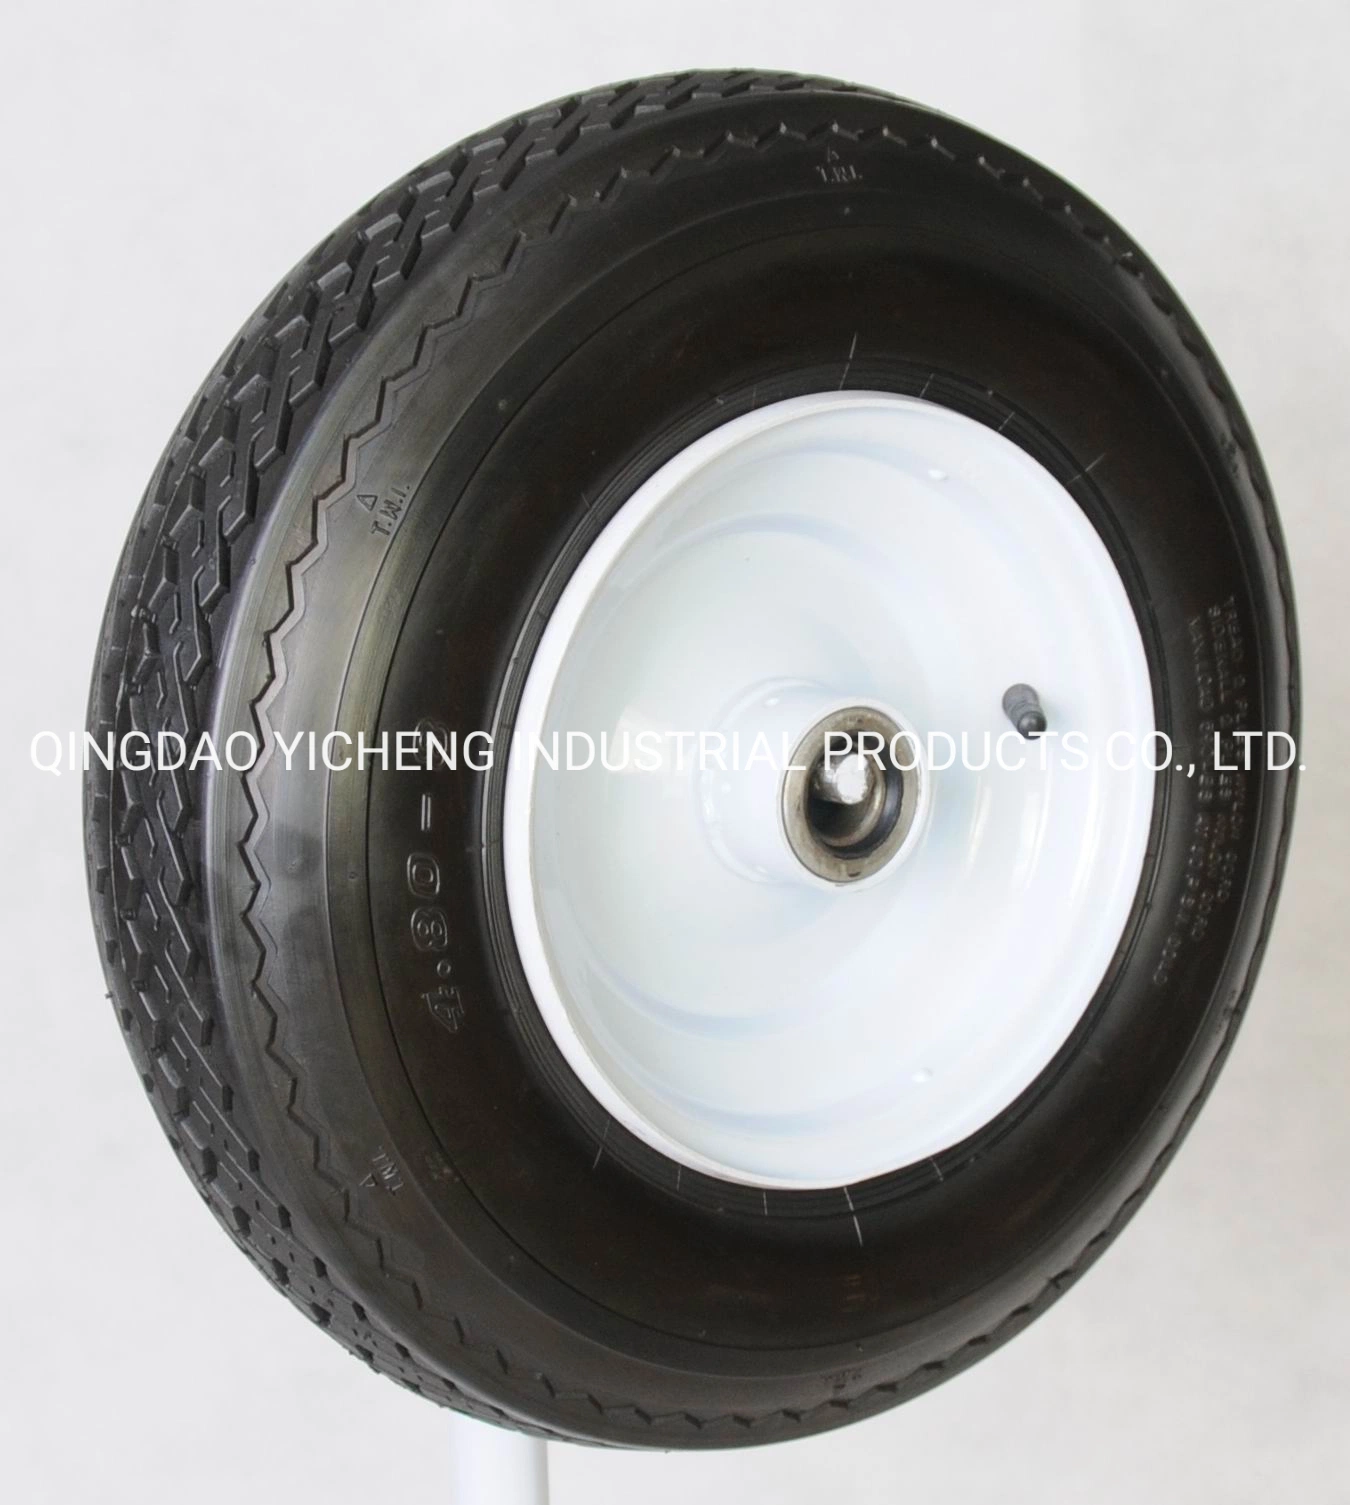 High Rubber Content Wheelbarow Wheel and Pneumatic Wheel 4.80-8 for Wheelbarrow